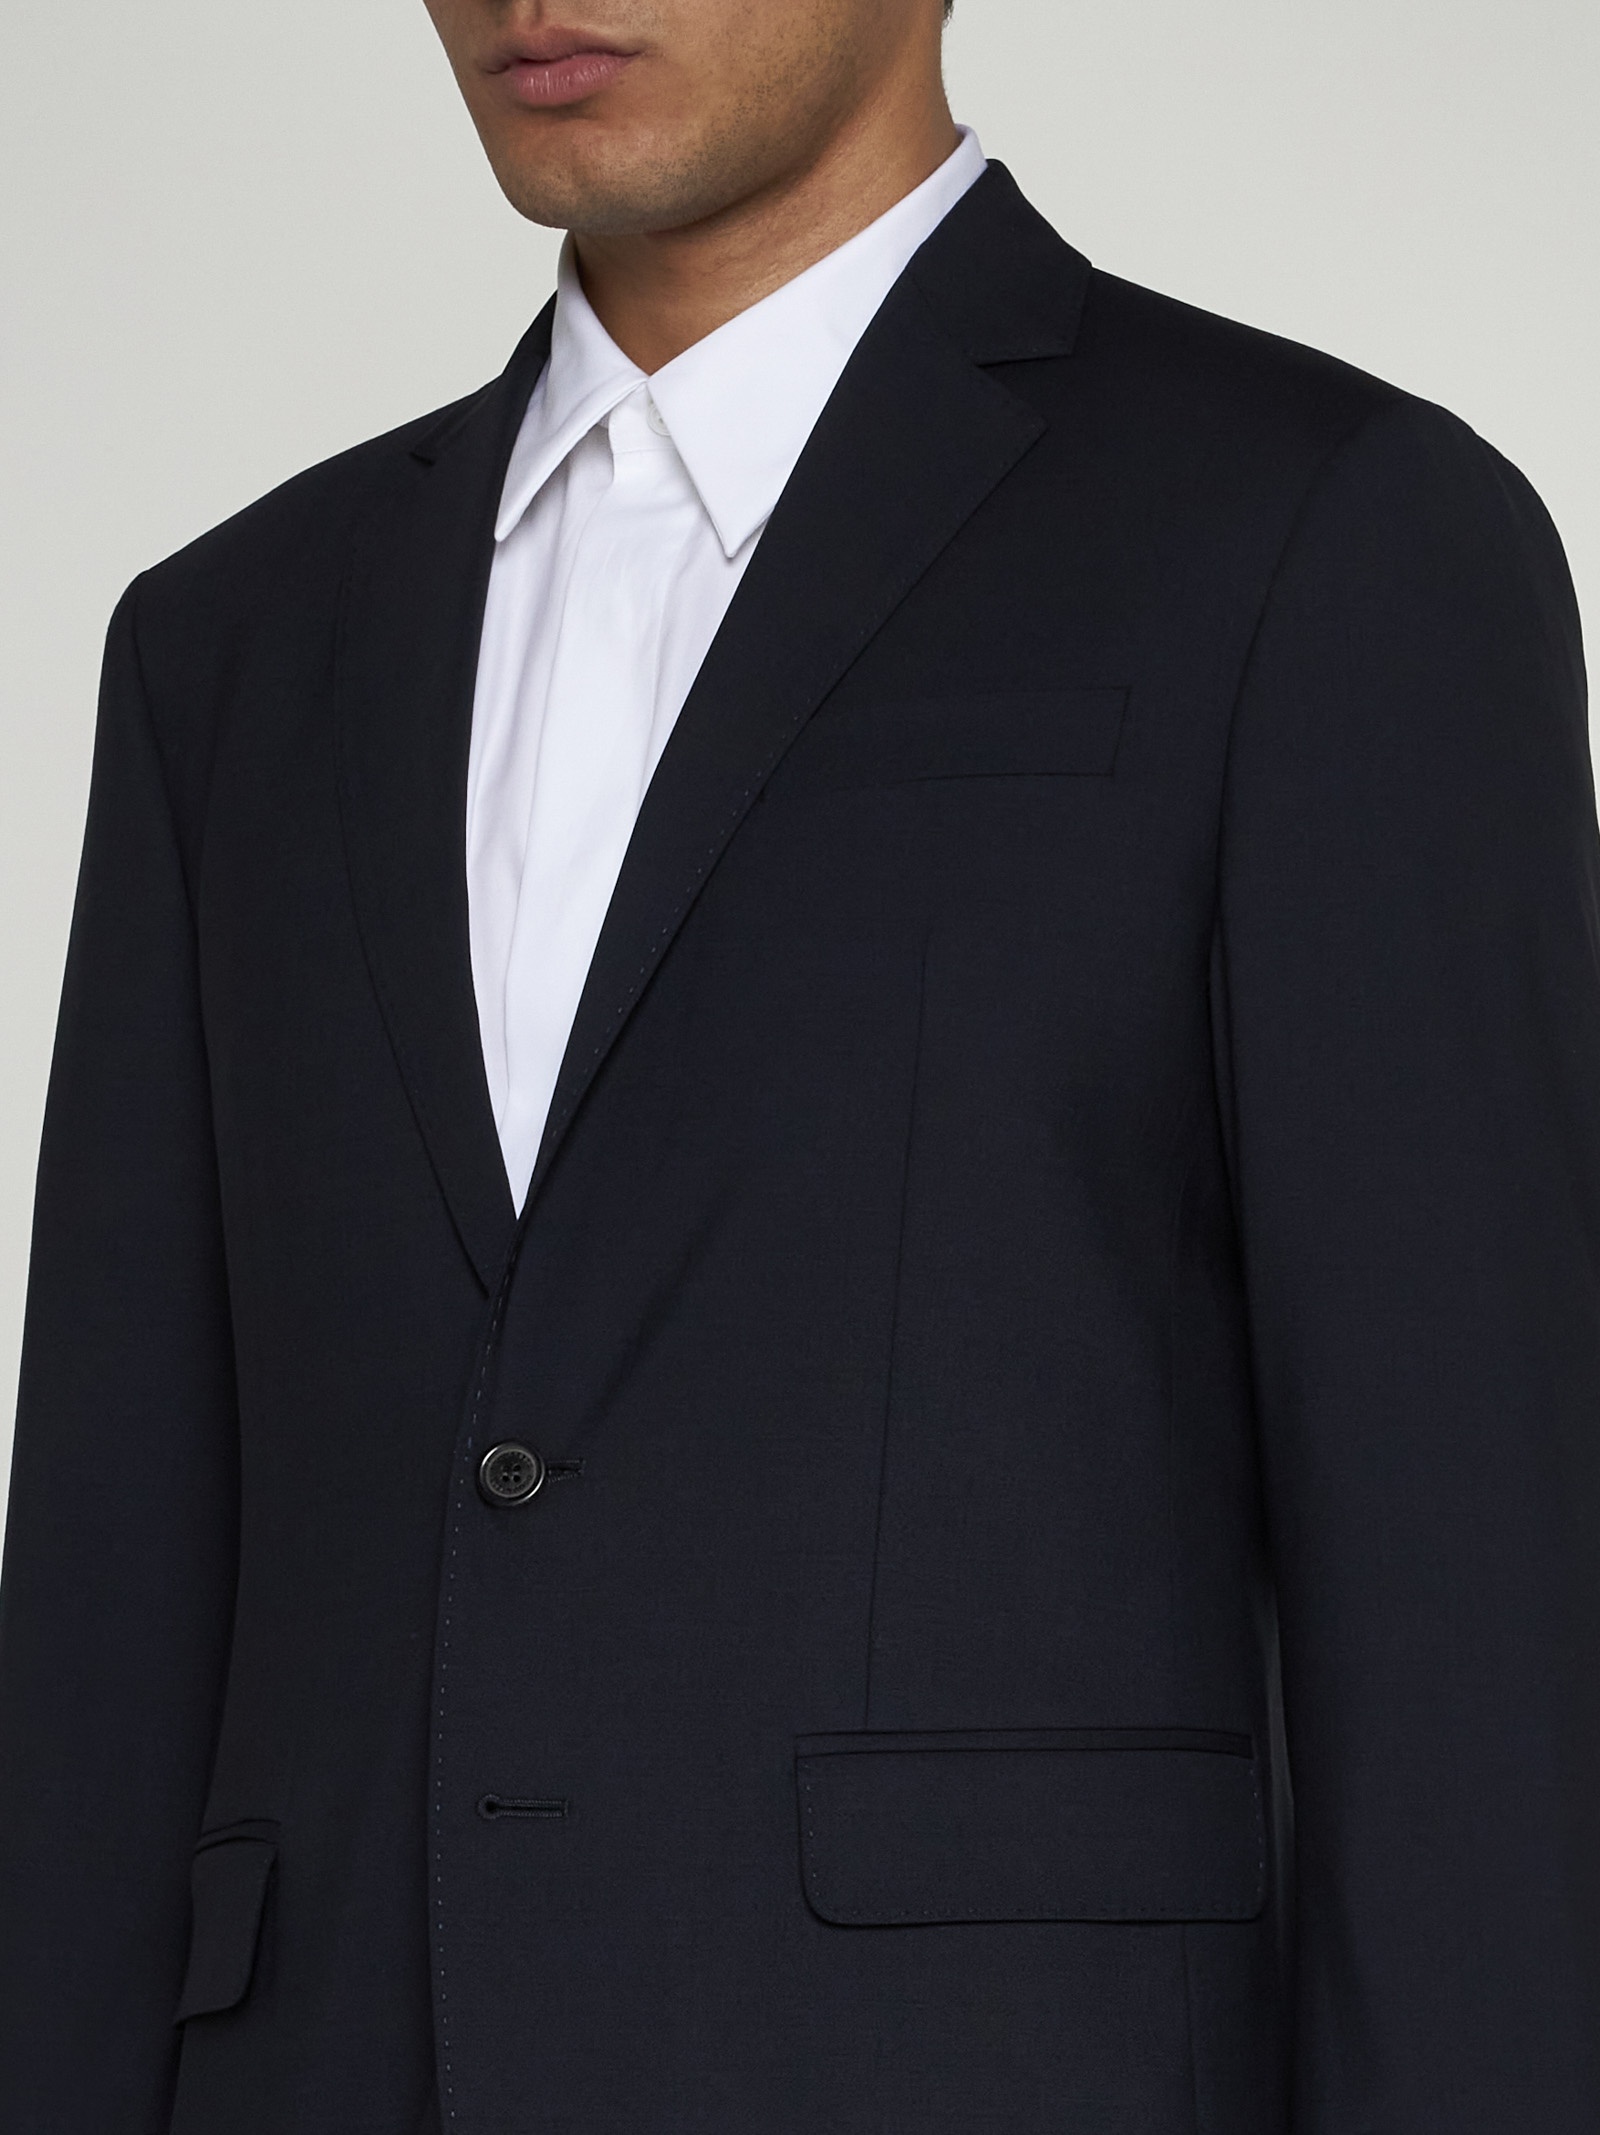 Paris wool single-breasted suit - 4